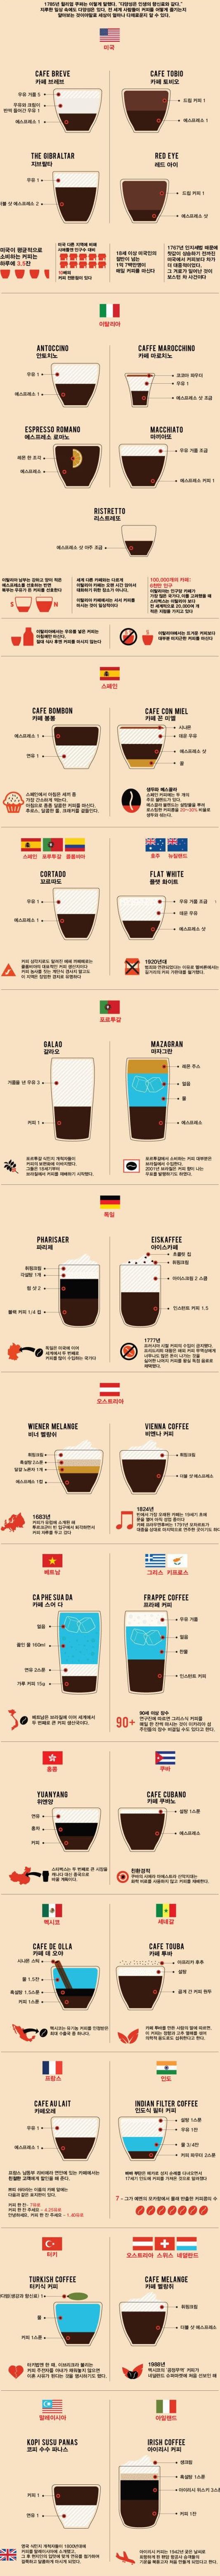 [스압] 국가별 커피 만드는 법.jpg